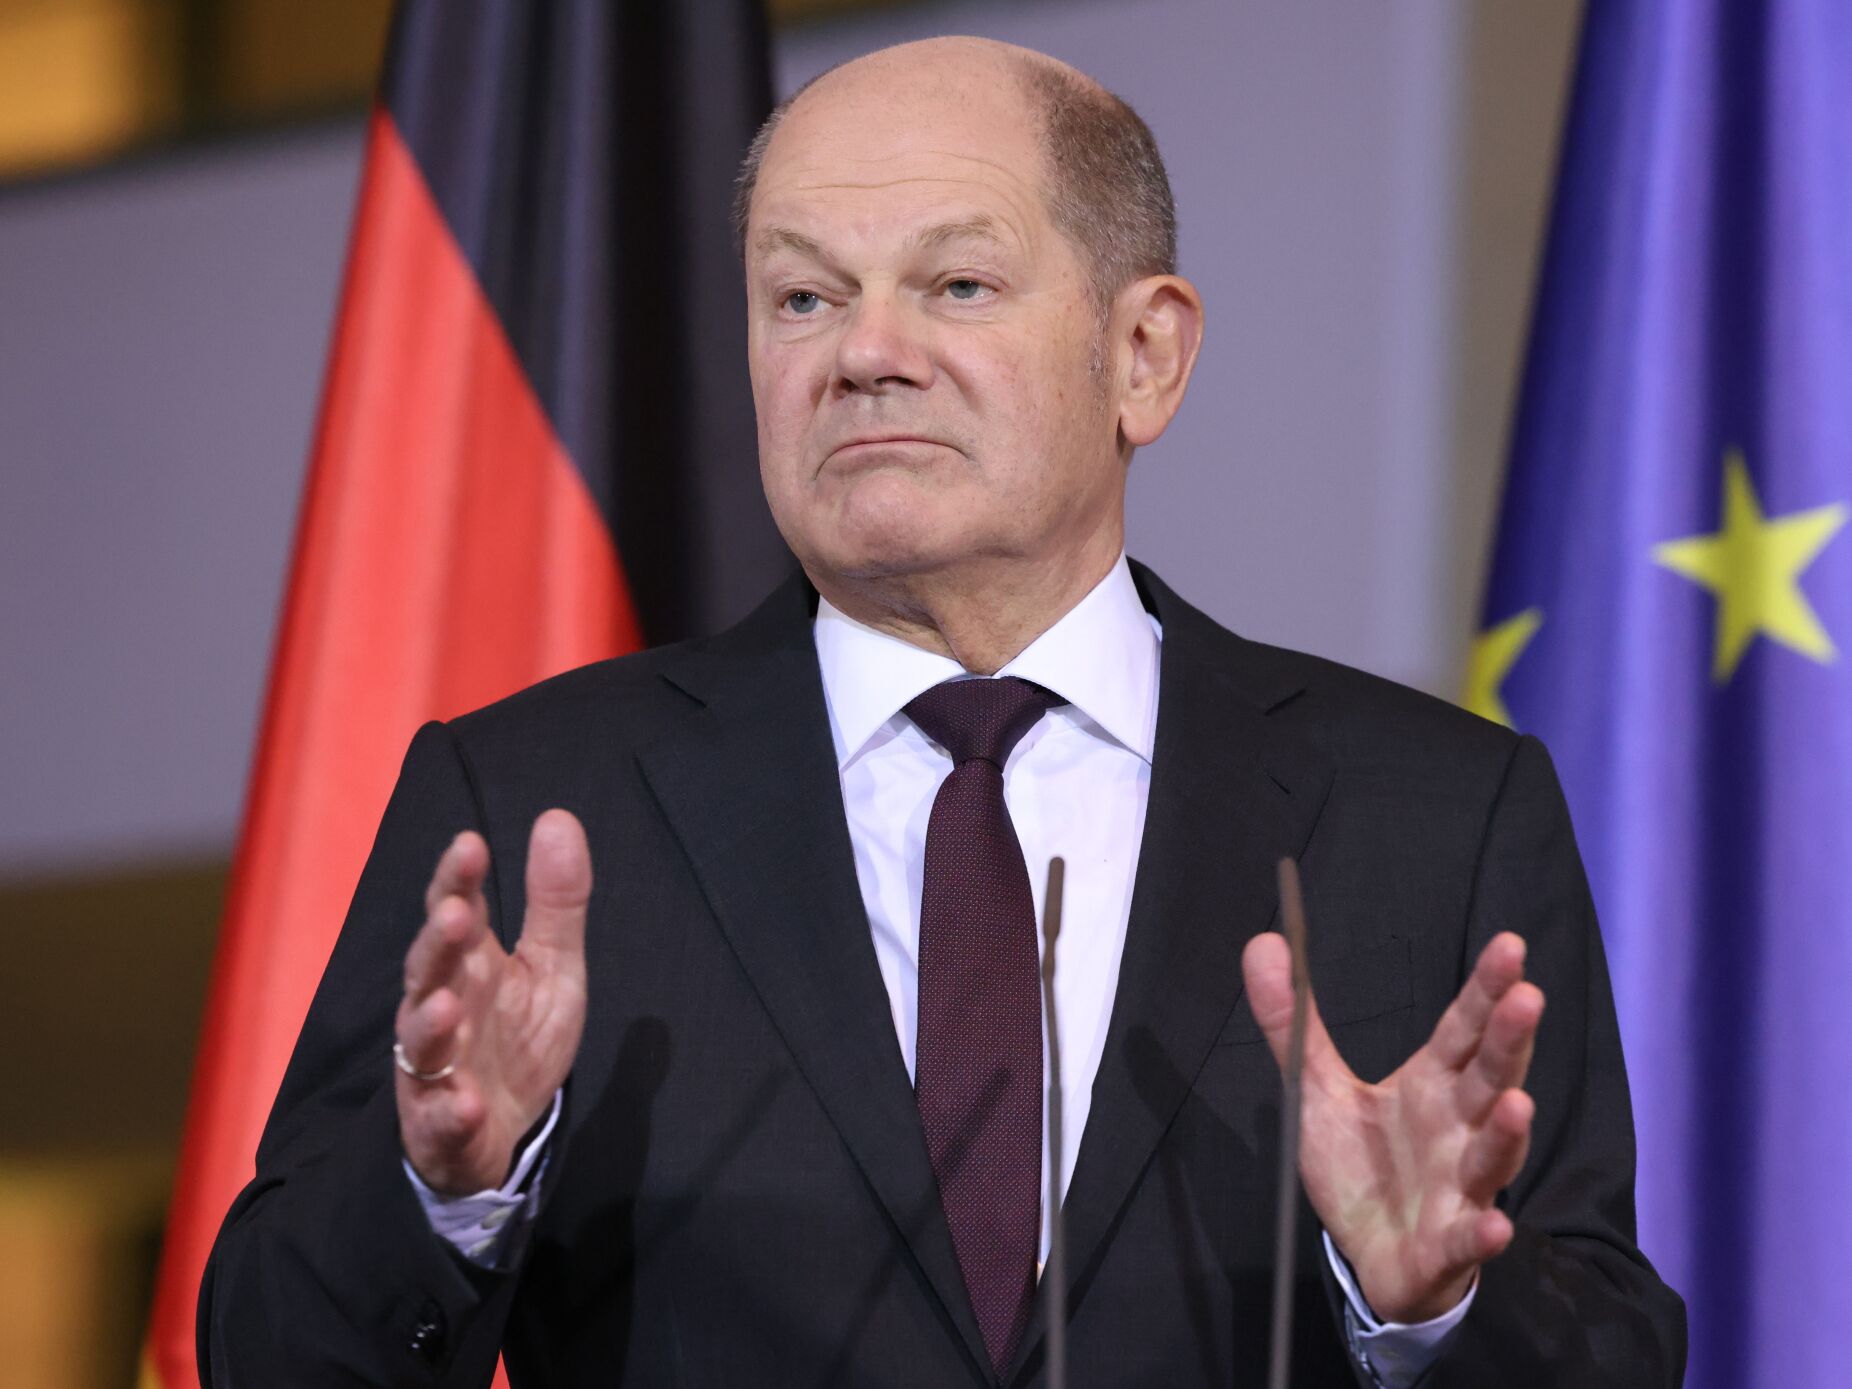 Chanceler alemão defende produção em "grande escala" de armamento na Europa